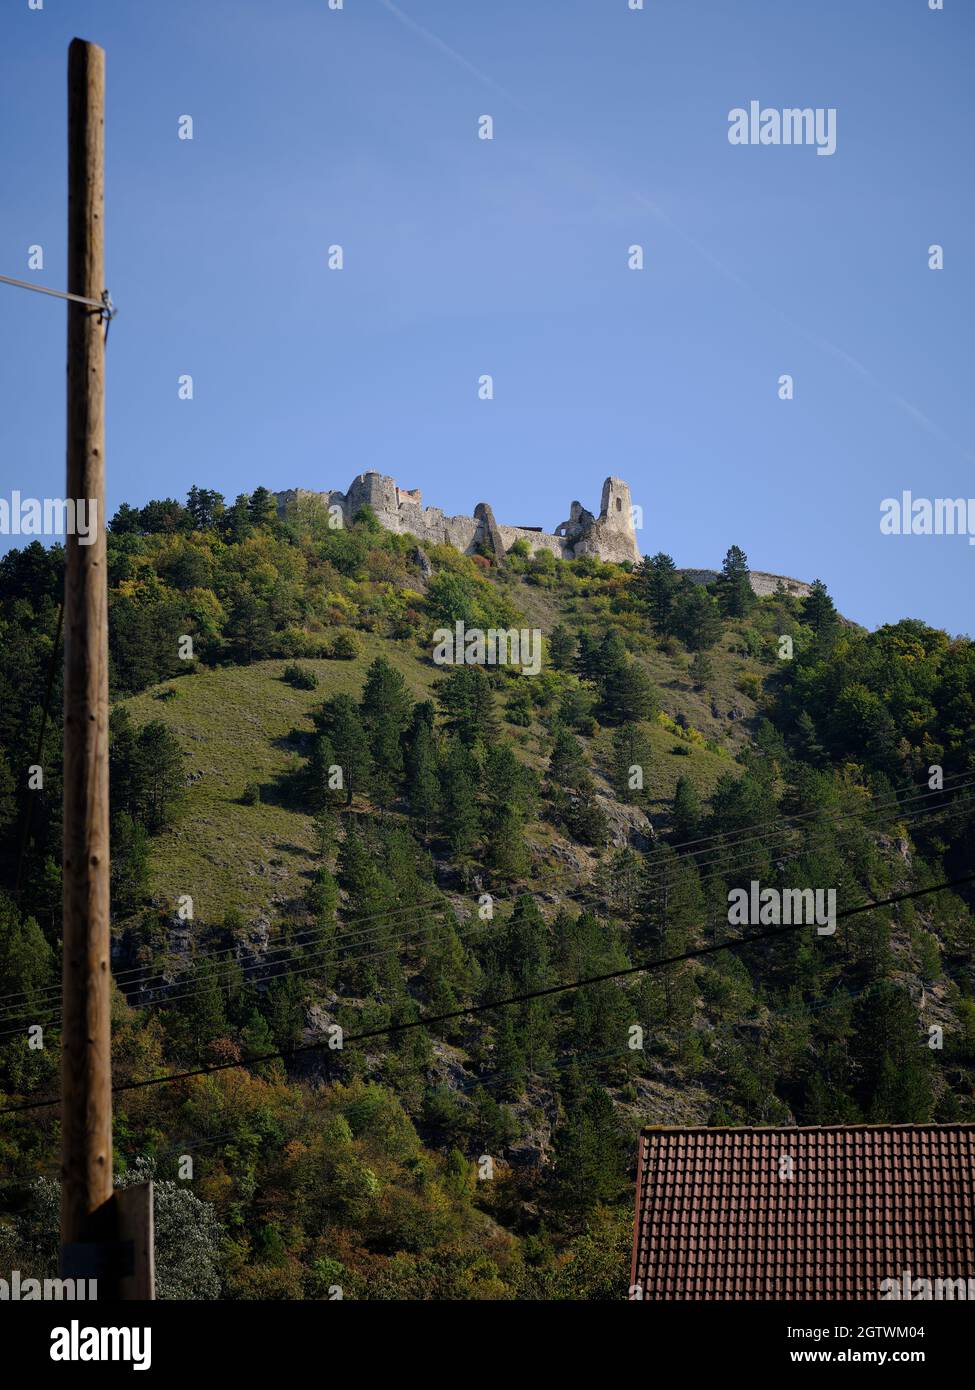 Les ruines du château de Cachtice sur la montagne, Slovaquie Banque D'Images